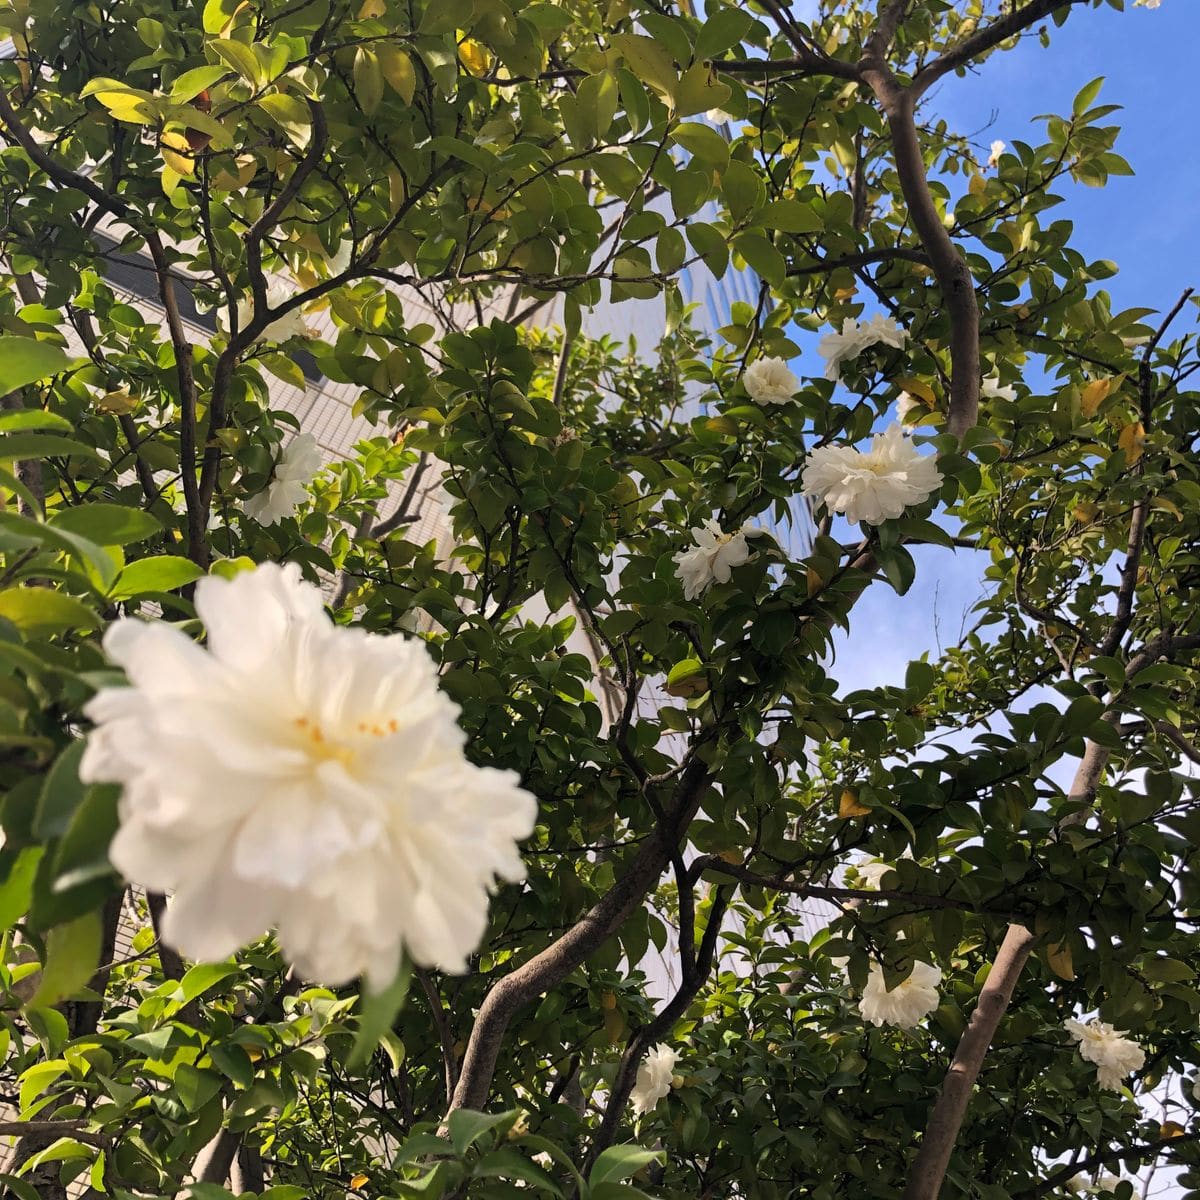 いつもお世話になります 街路樹で 現在白い花が咲いています 園芸相談q A みんなの趣味の園芸